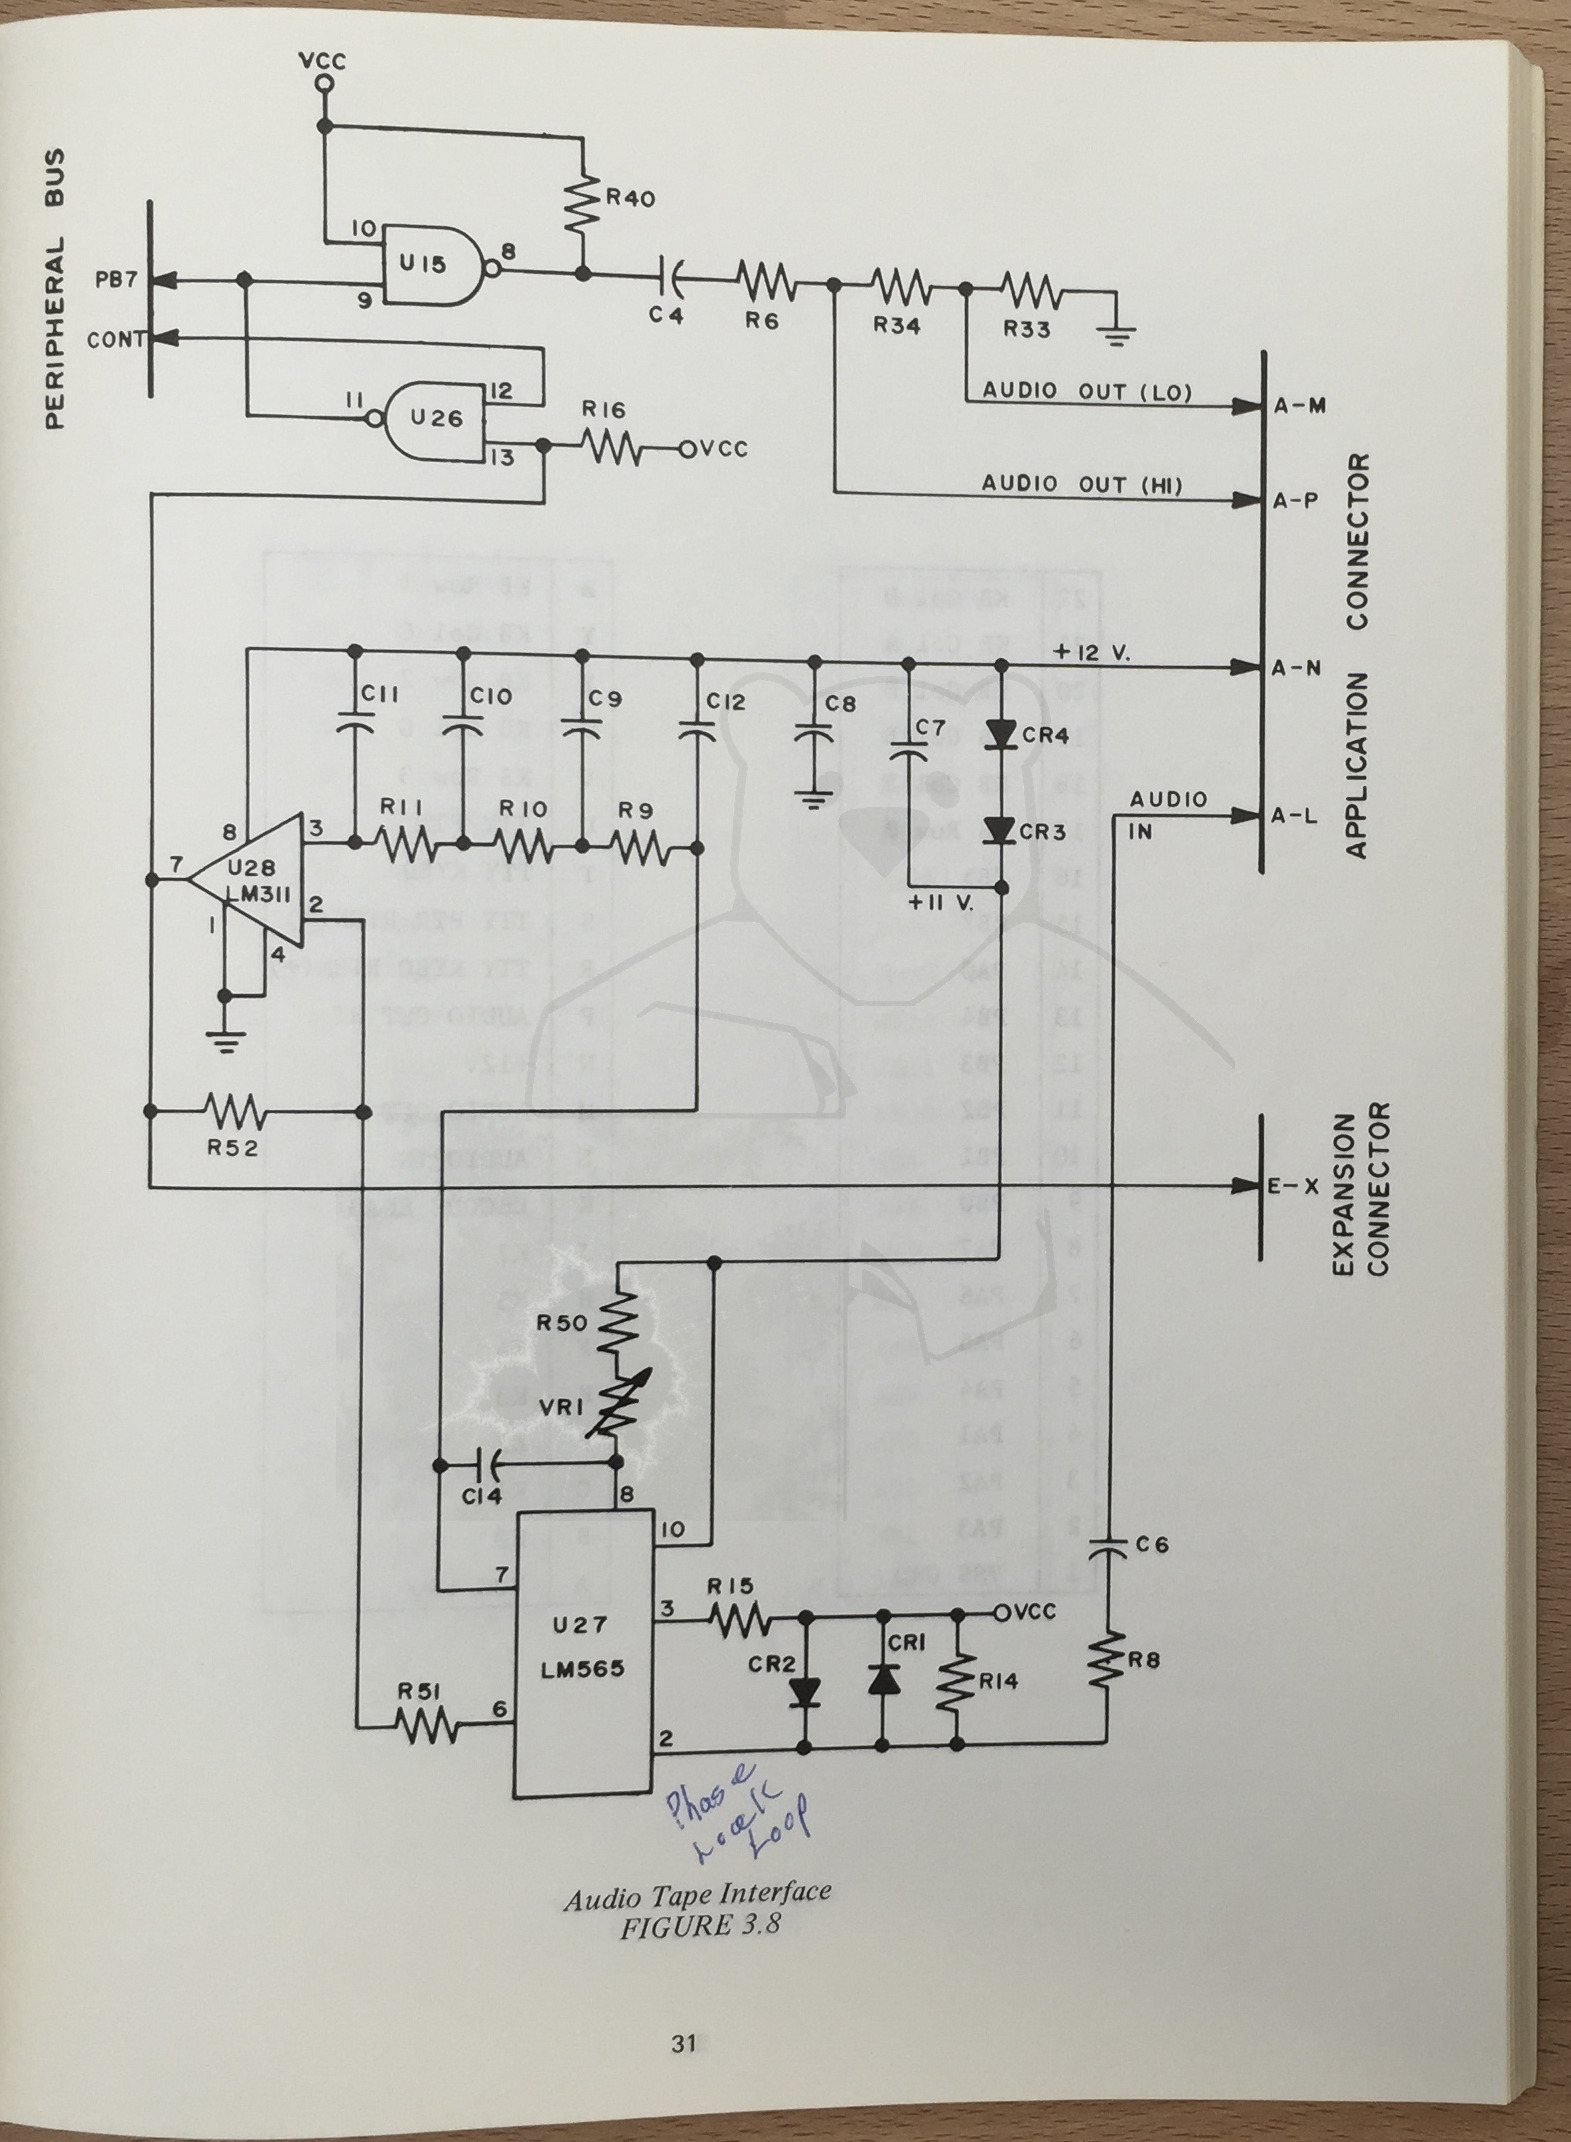 Commodore MOS KIM-1 - MOS KIM-1 User Manual